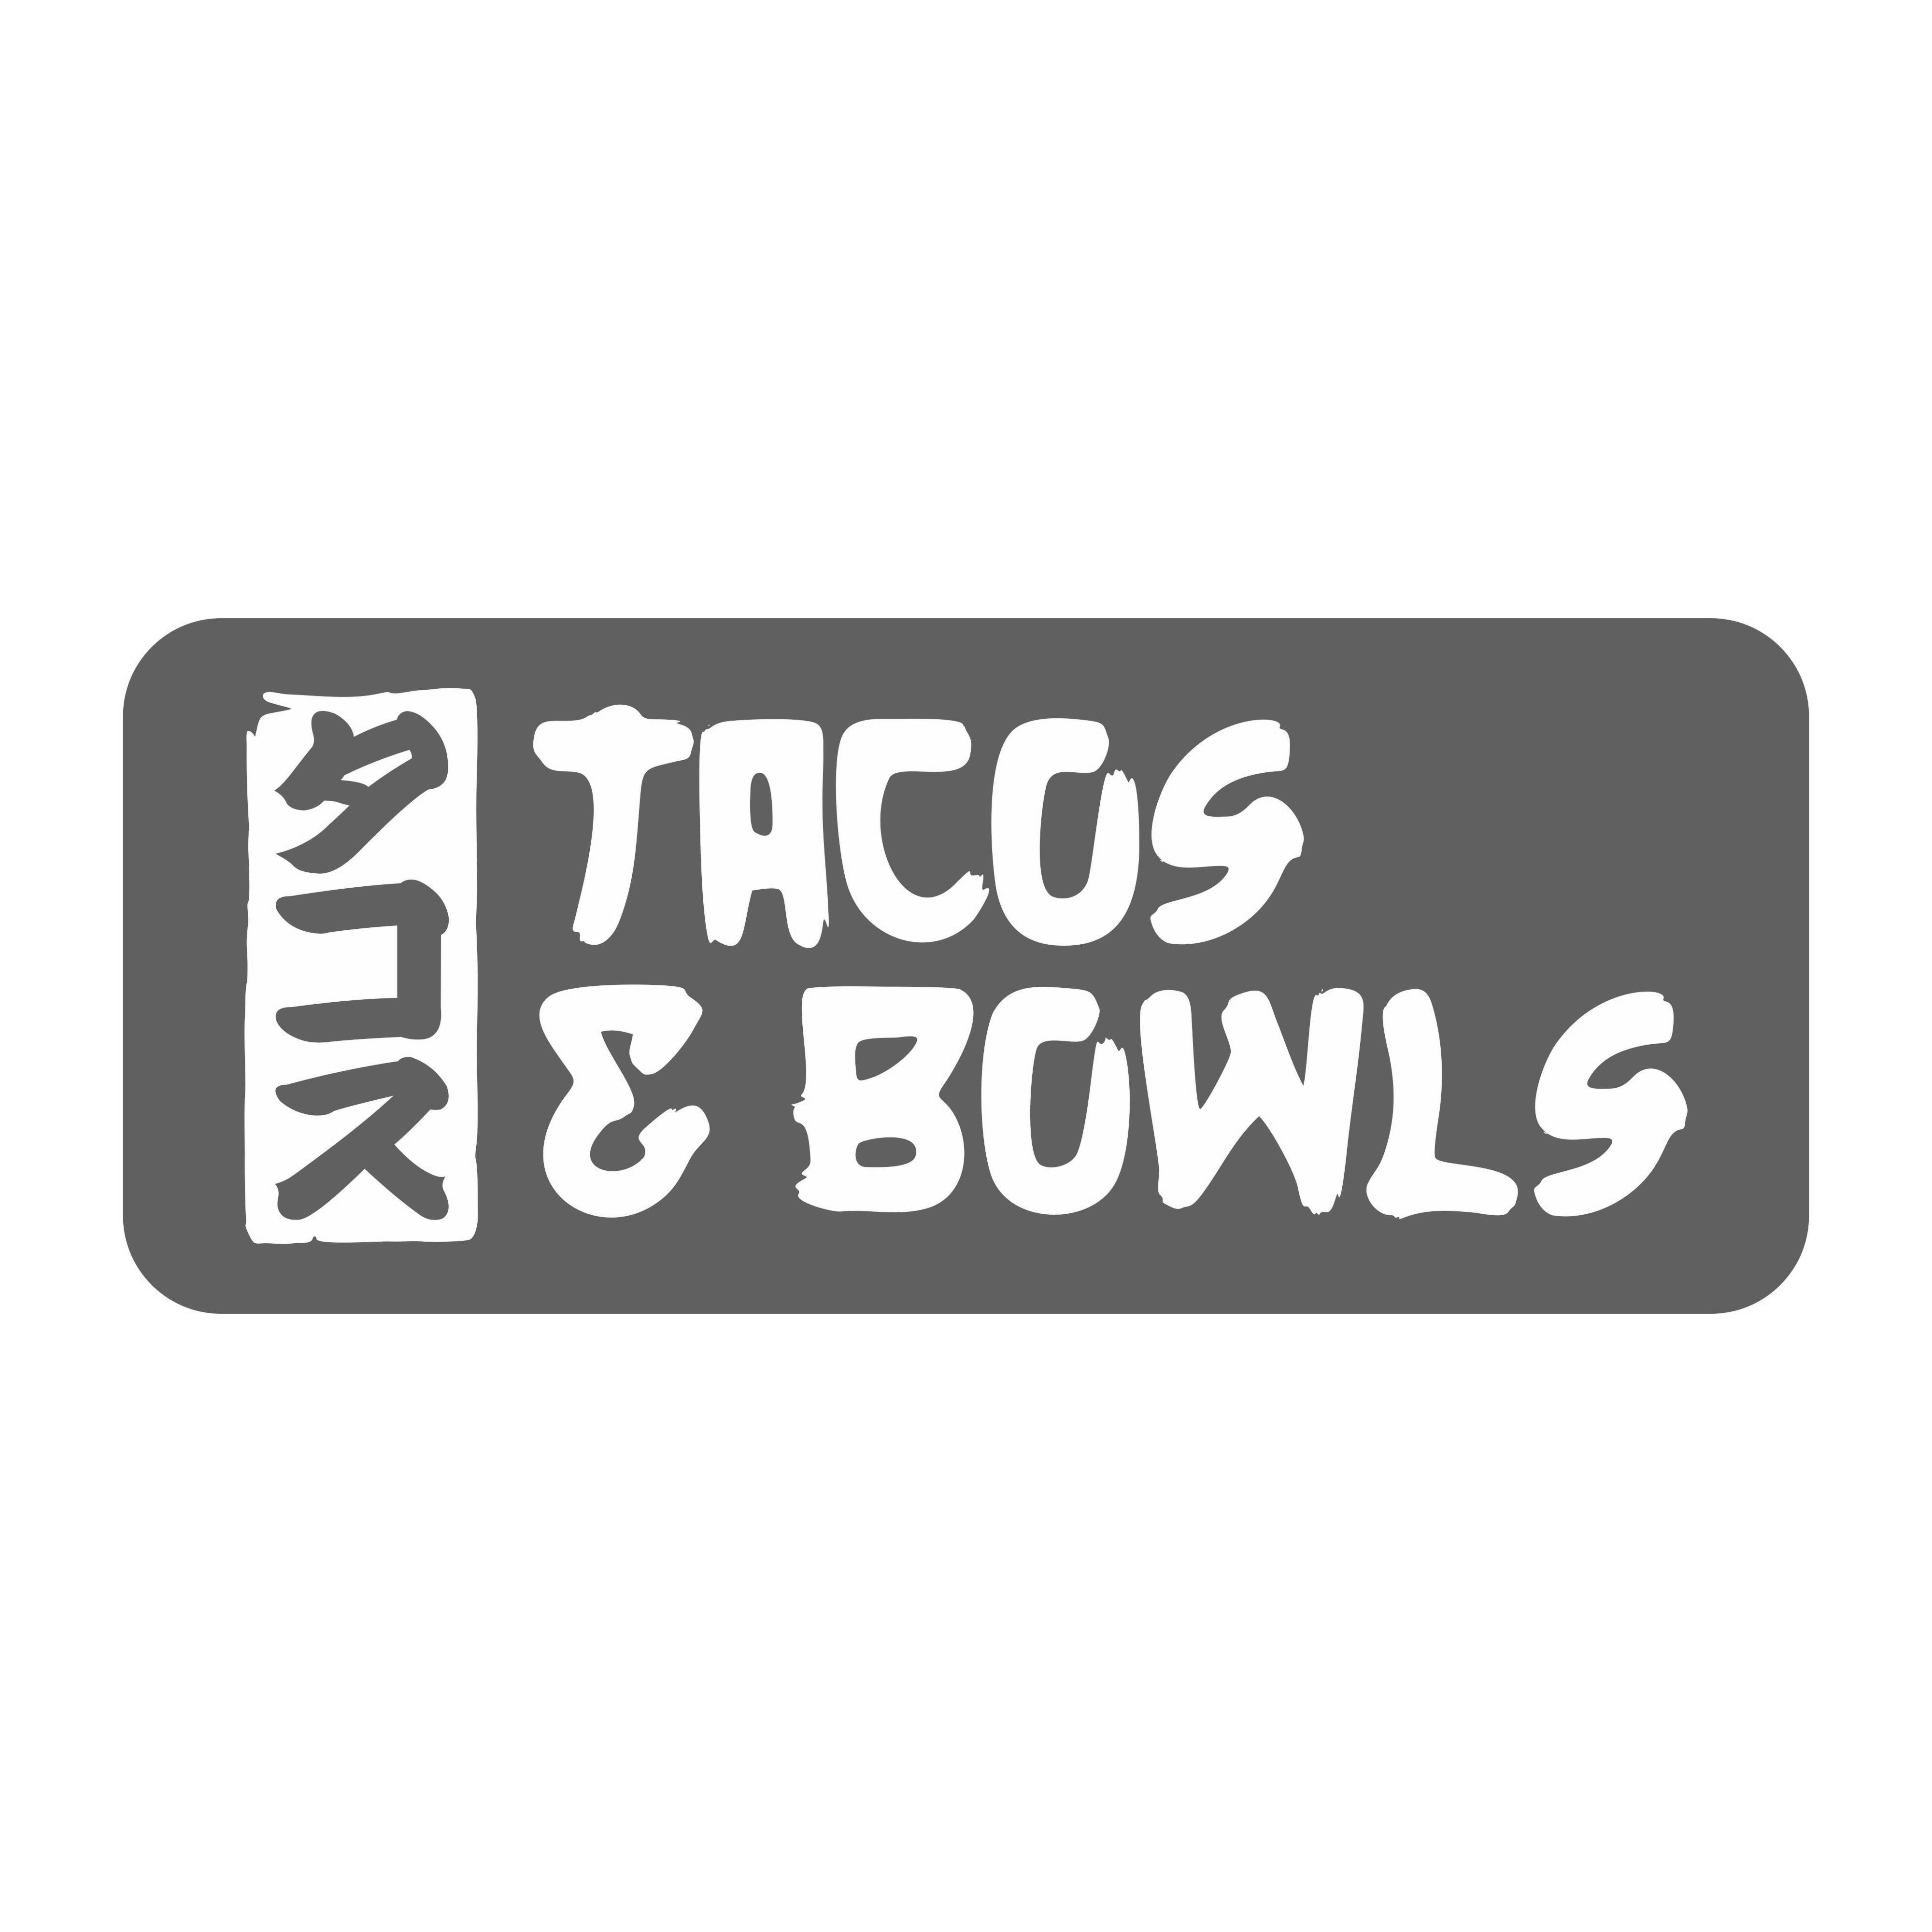 Tacos & Bowls